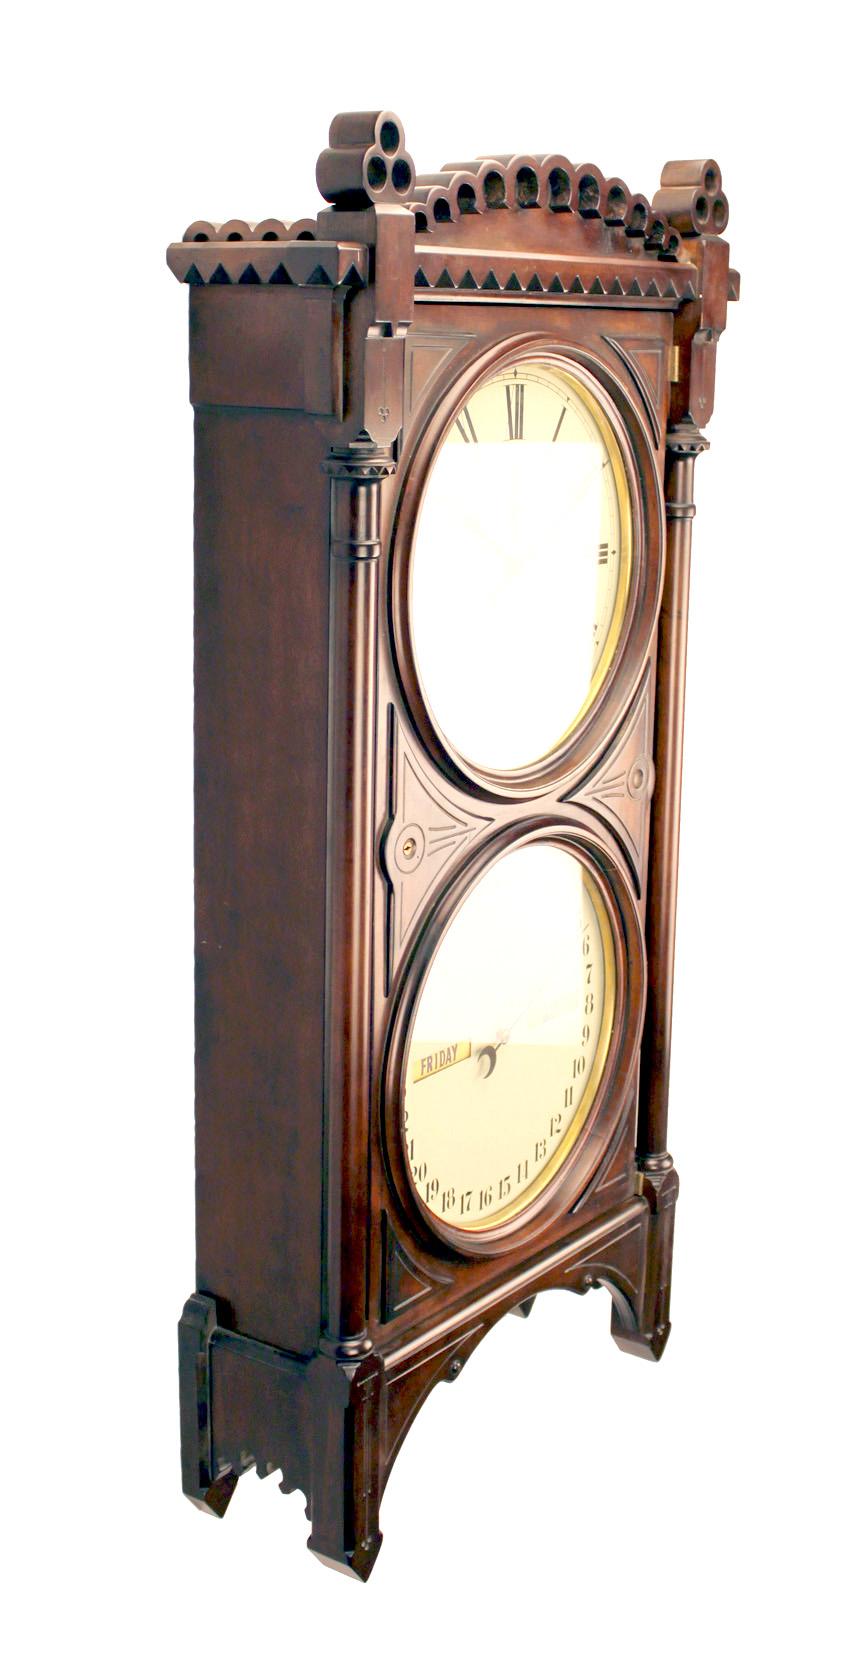  SETH THOMAS STYLE OFFICE CALENDAR REGULATOR Nr. 5 WALL CLOCK

Hier ist ein schönes Büro Regulator Kalender Wanduhr. Das Gehäuse wurde vor kurzem aus massivem Hartholz gefertigt und in antikem Walnussholz ausgeführt. Die gesamte Uhr wiegt etwa 70